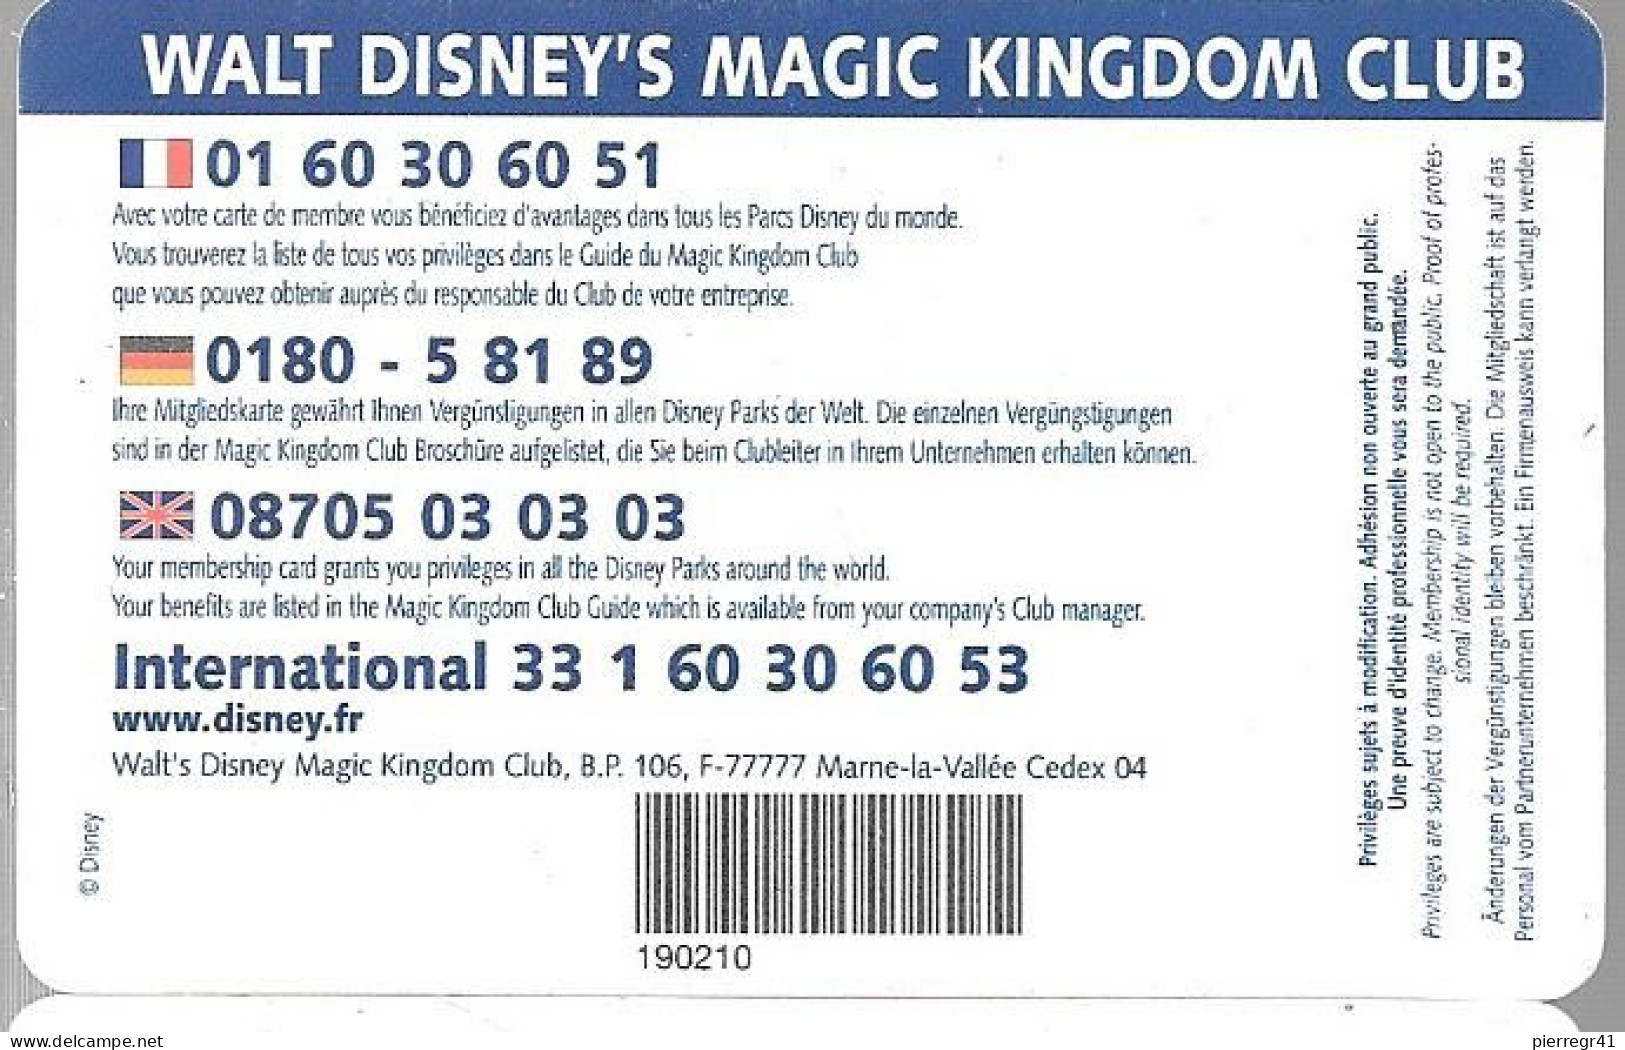 DISNEYLAND-MAGIC KINGDOM CLUB-CARTE MEMBRE-2002-France Telecom-TBE/RARE - Pasaportes Disney